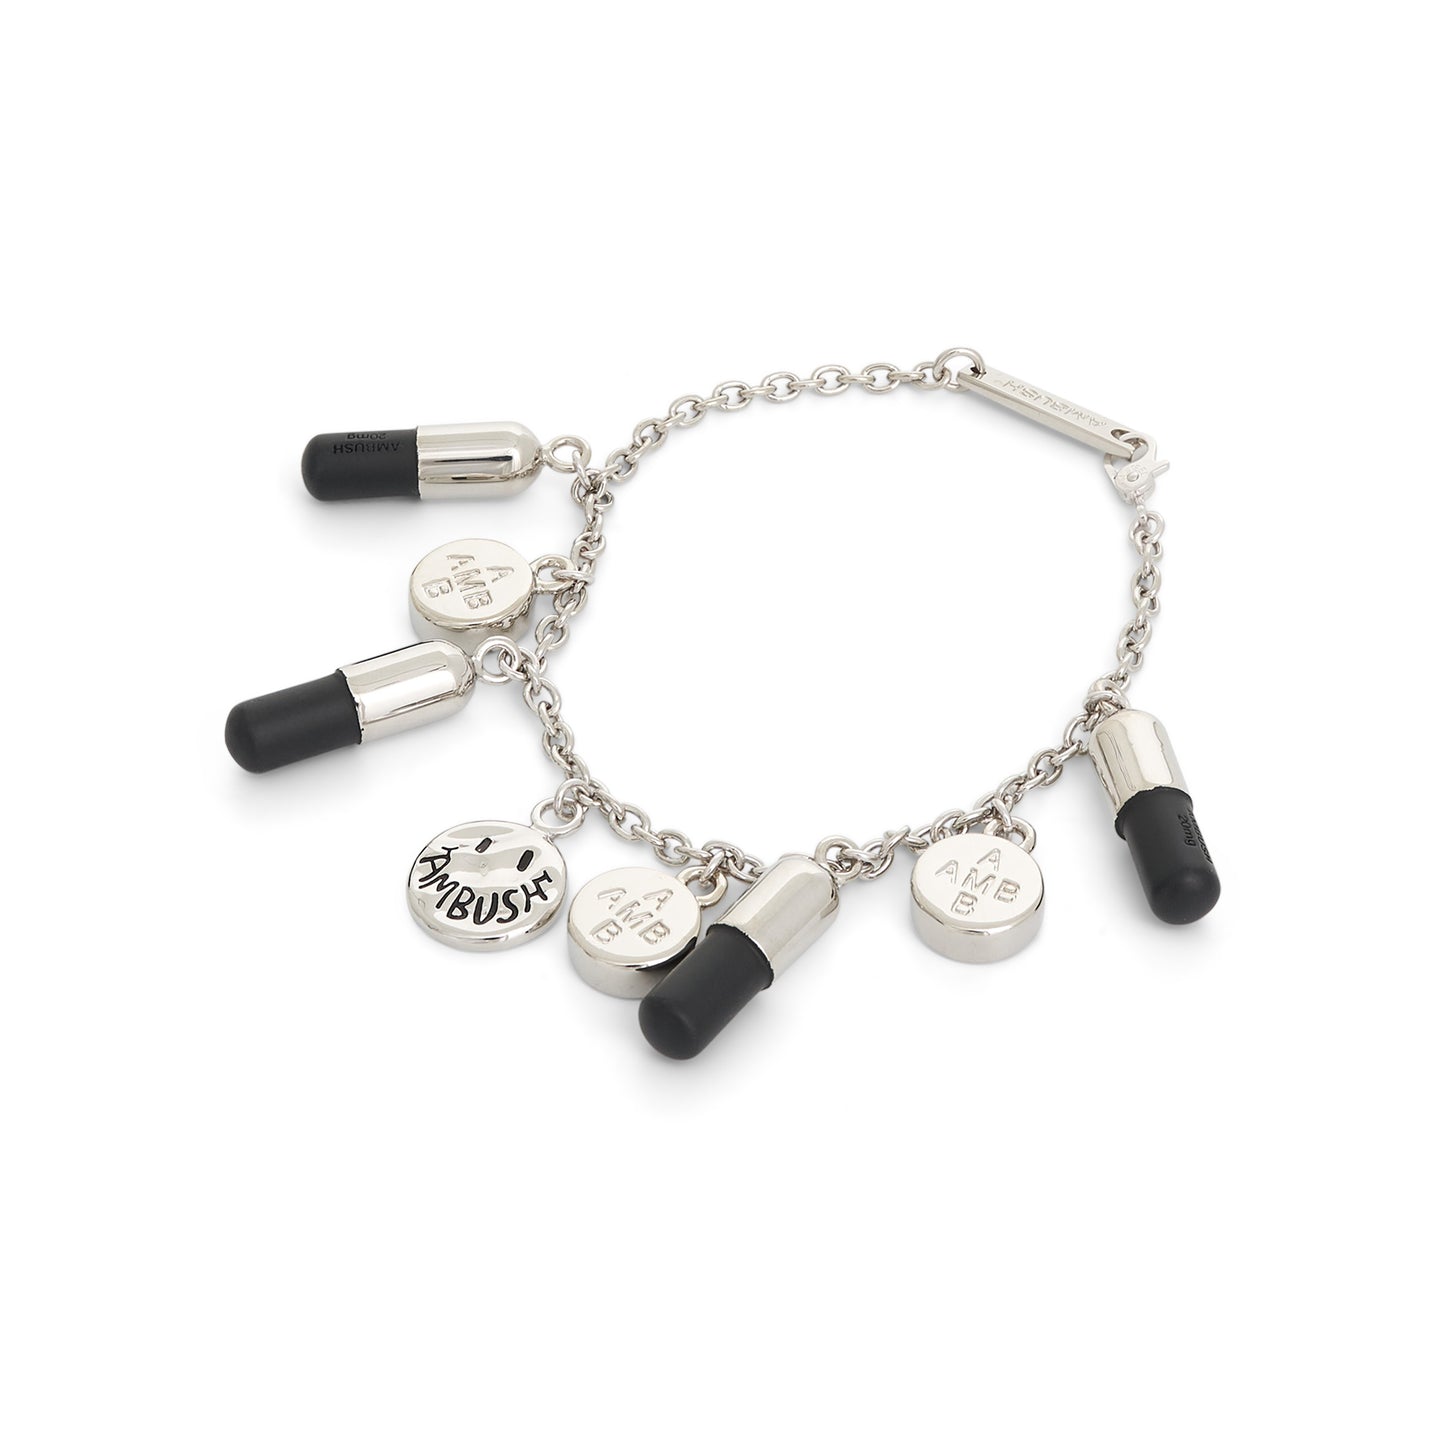 Multipill Charm Bracelet in Silver/Black